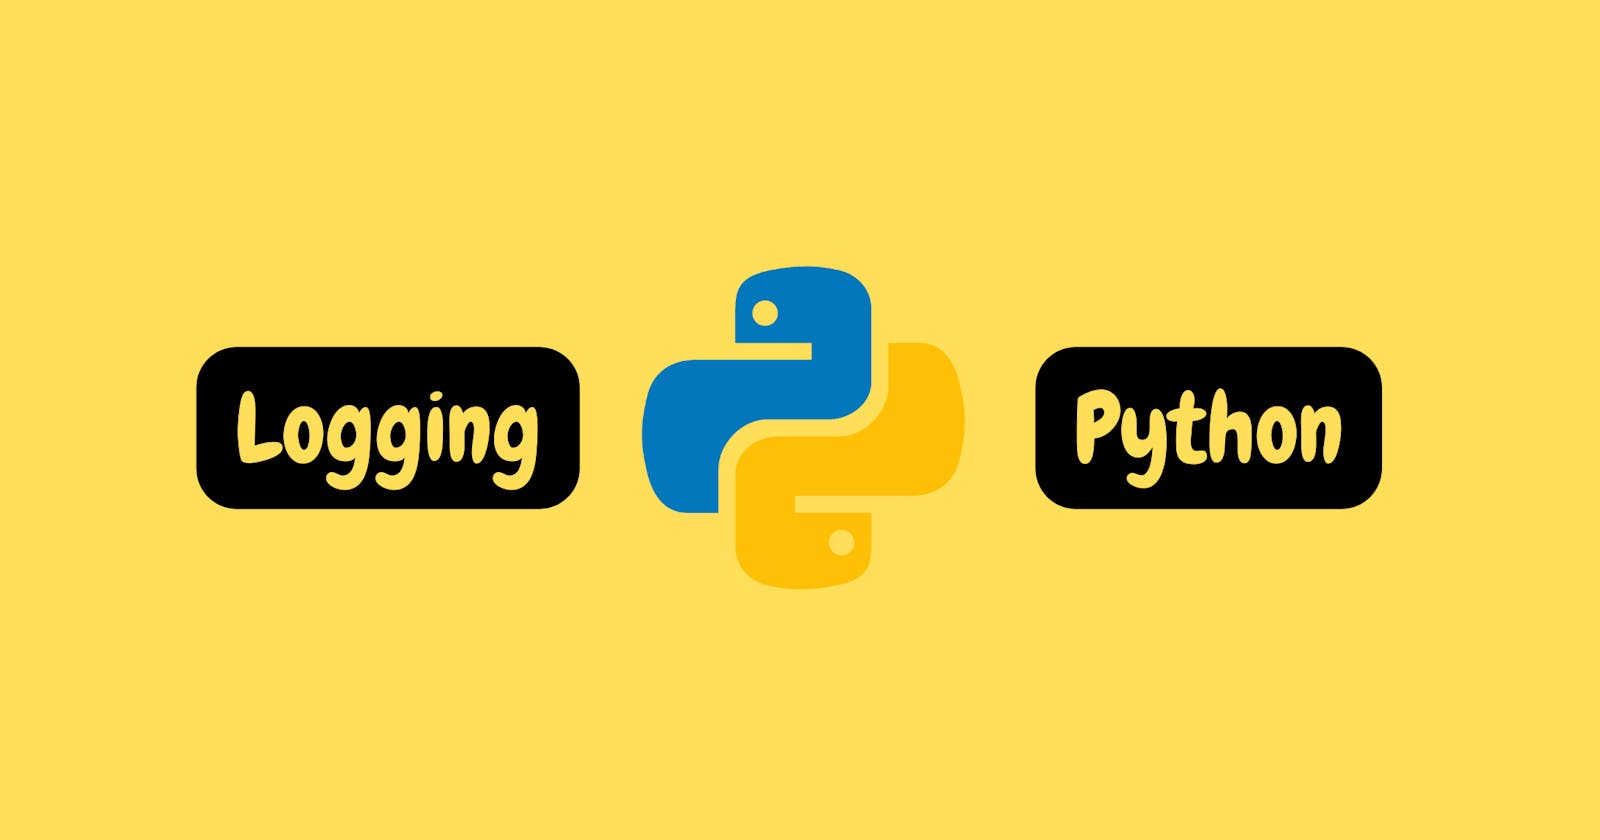 Logging in Python